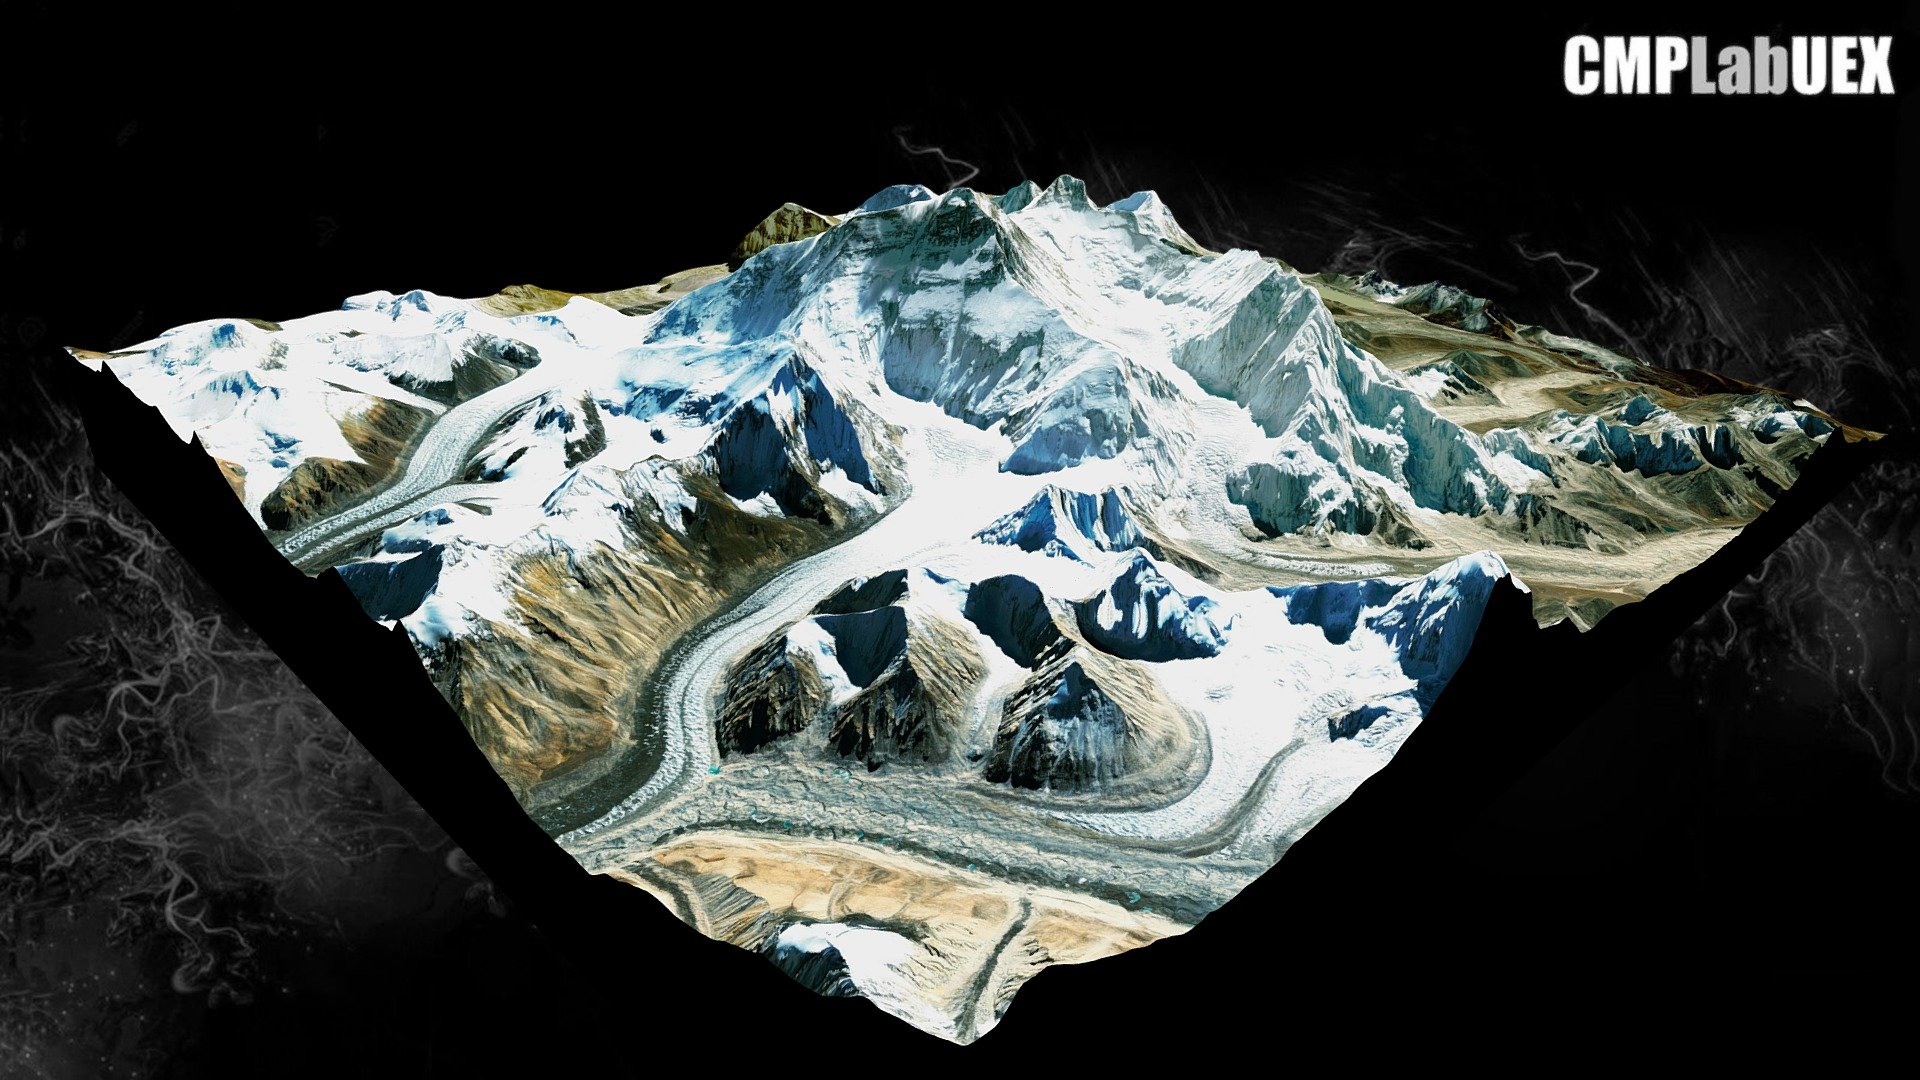 Monte Everest, Himalaya, China/Nepal